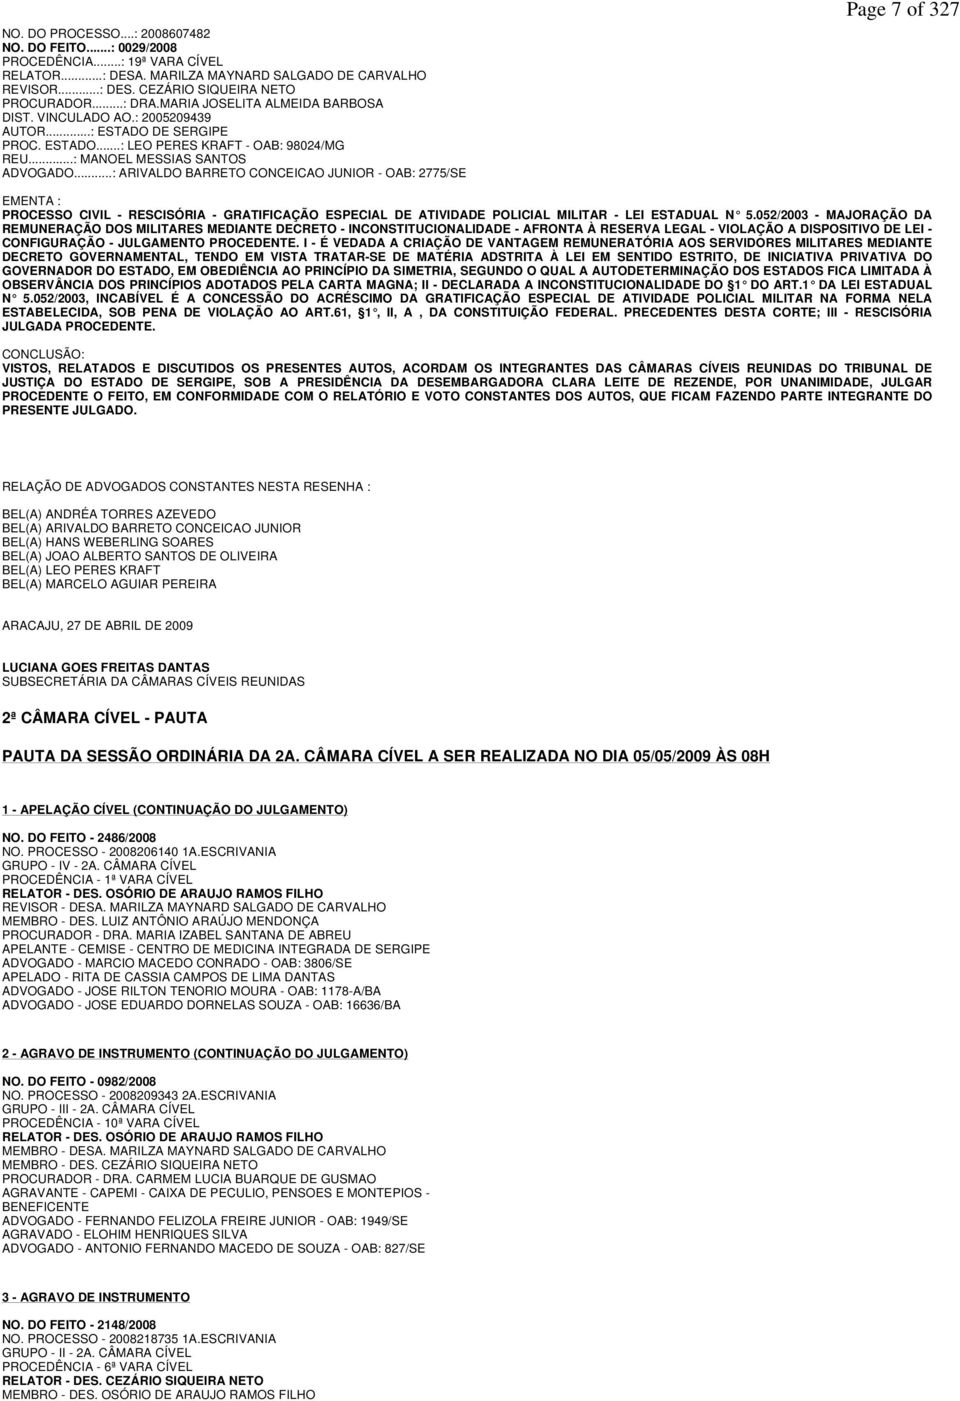 ..: ARIVALDO BARRETO CONCEICAO JUNIOR - OAB: 2775/SE Page 7 of 327 EMENTA : PROCESSO CIVIL - RESCISÓRIA - GRATIFICAÇÃO ESPECIAL DE ATIVIDADE POLICIAL MILITAR - LEI ESTADUAL N 5.